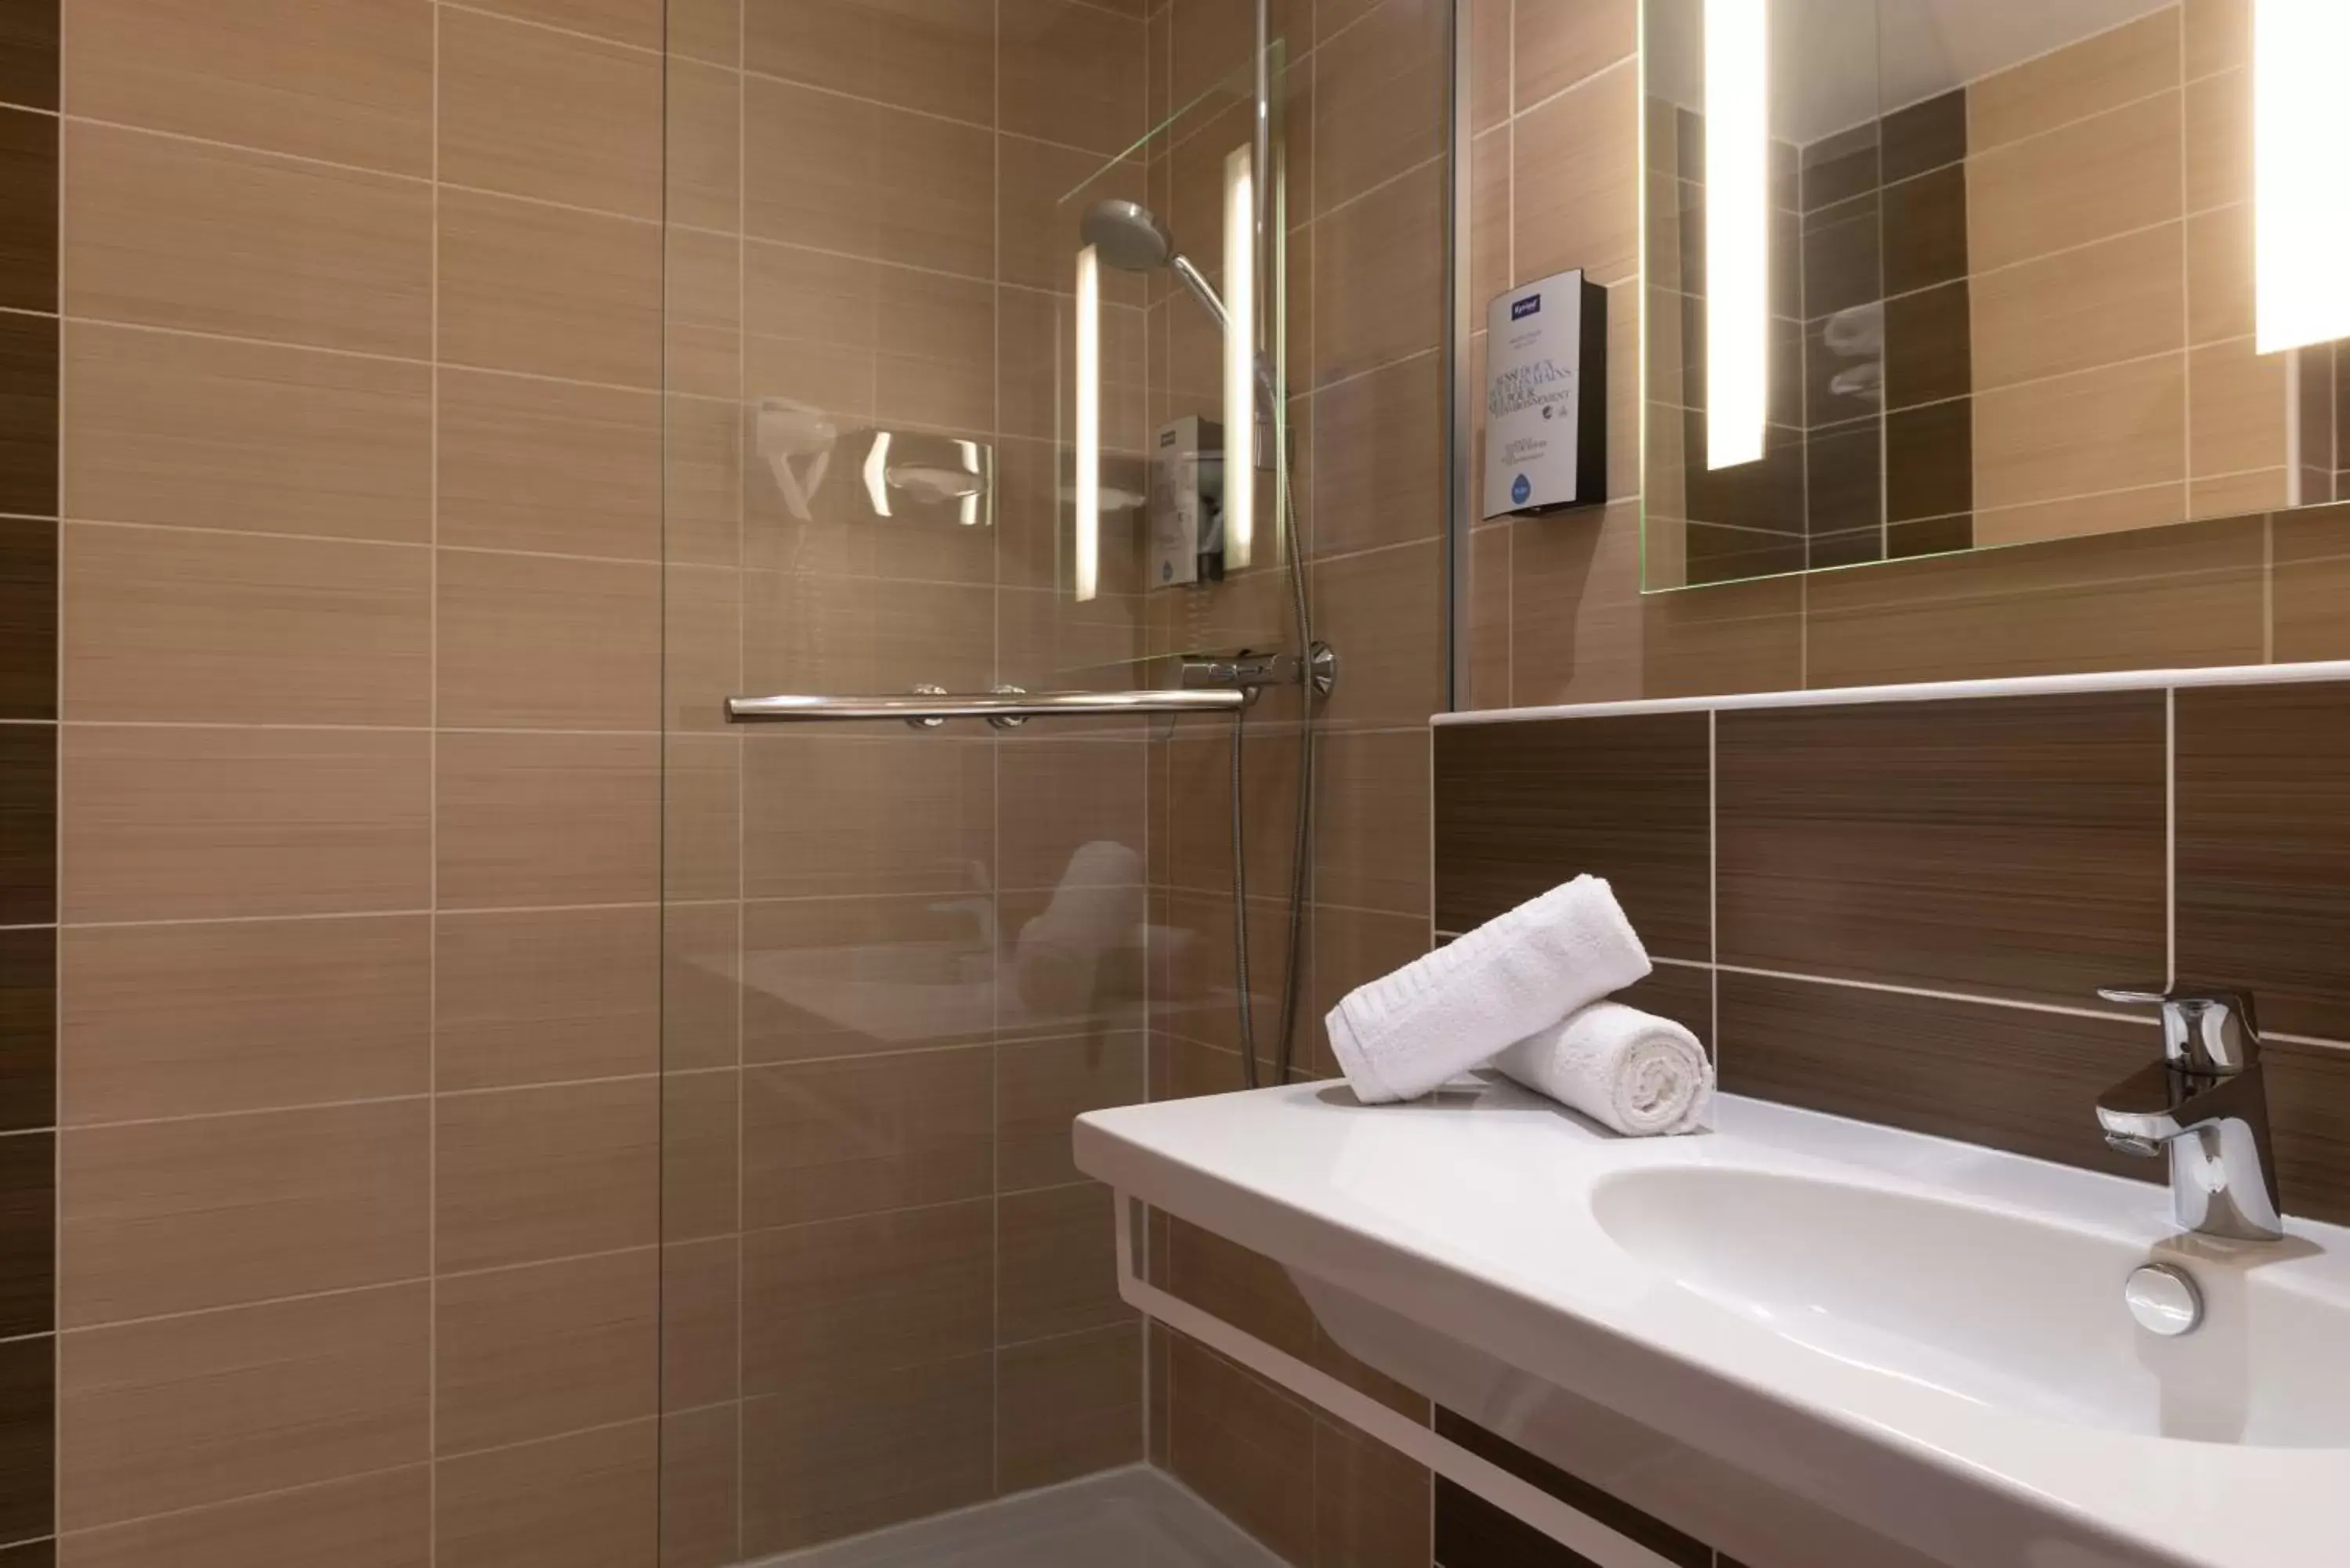 Shower, Bathroom in Kyriad Montpellier Sud - A709